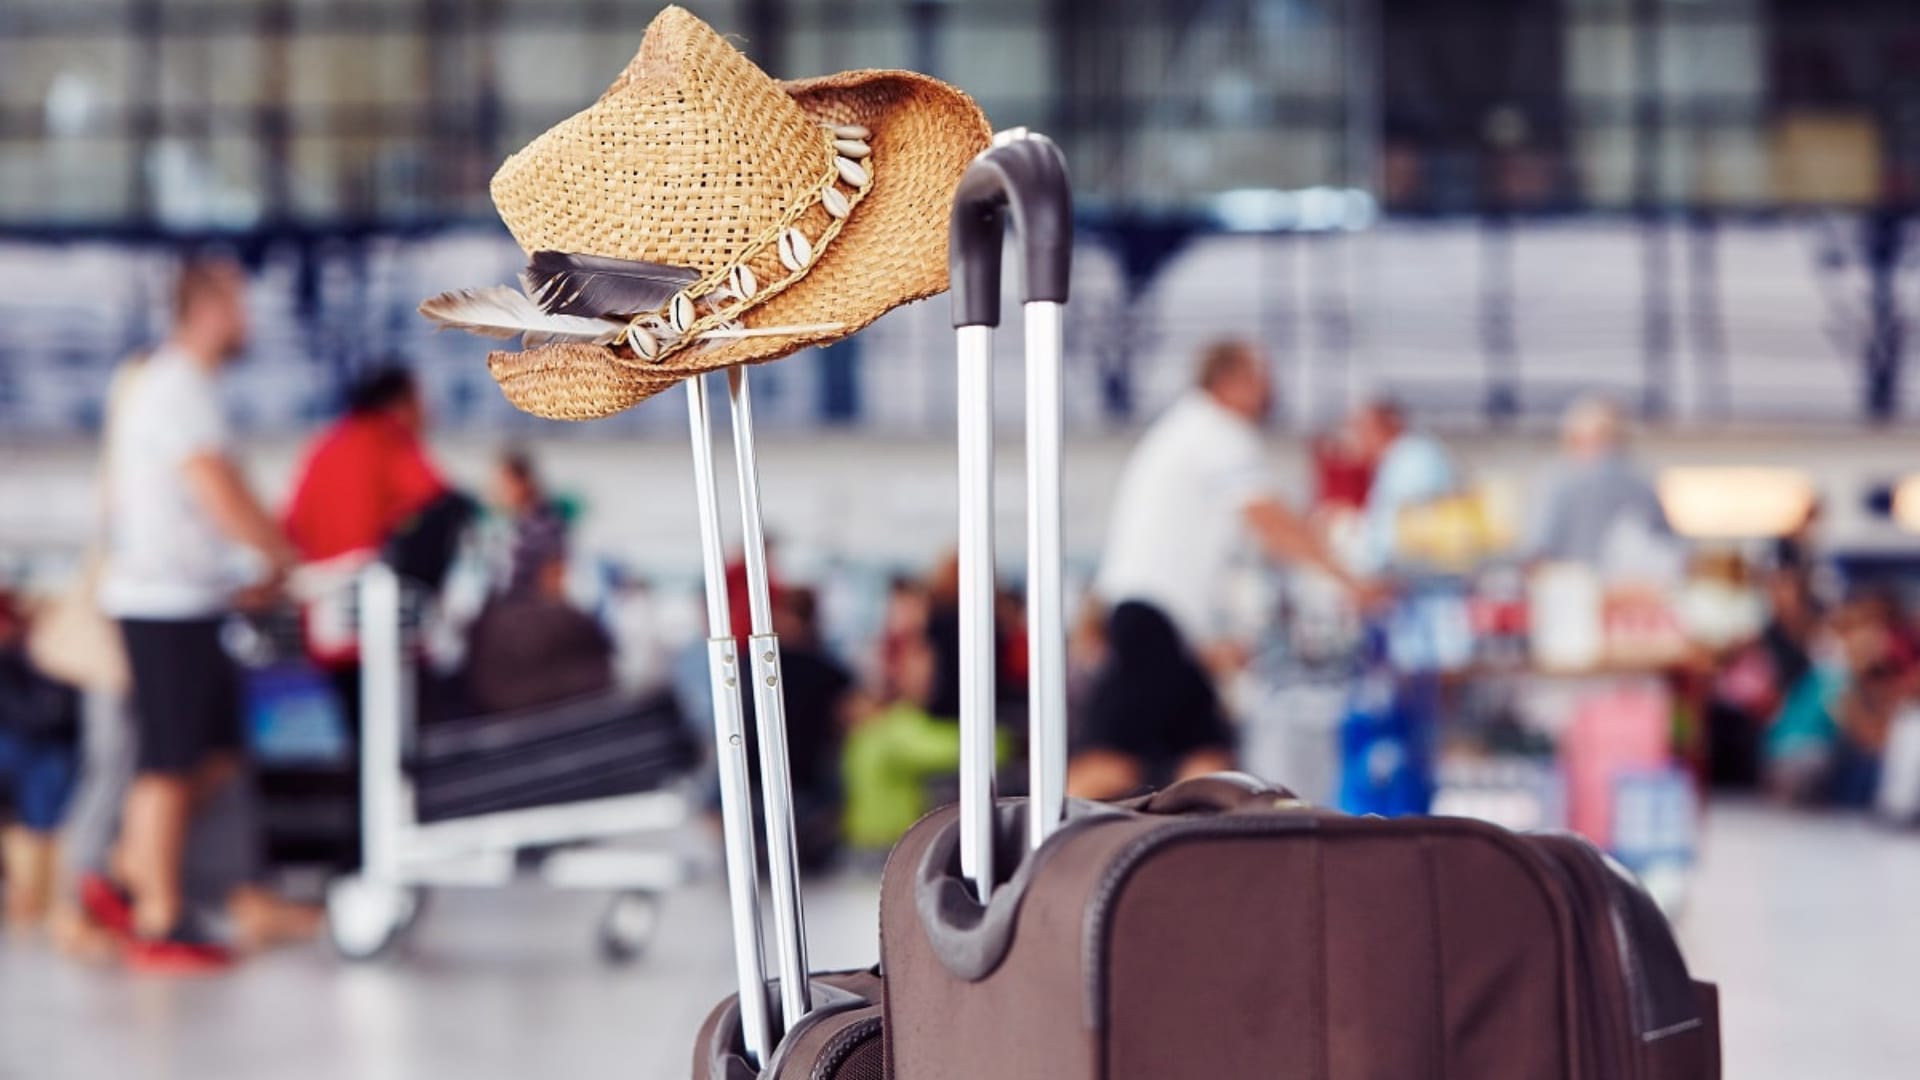 Cette voyageuse a trouvé une solution pour ne pas payer de supplément bagage